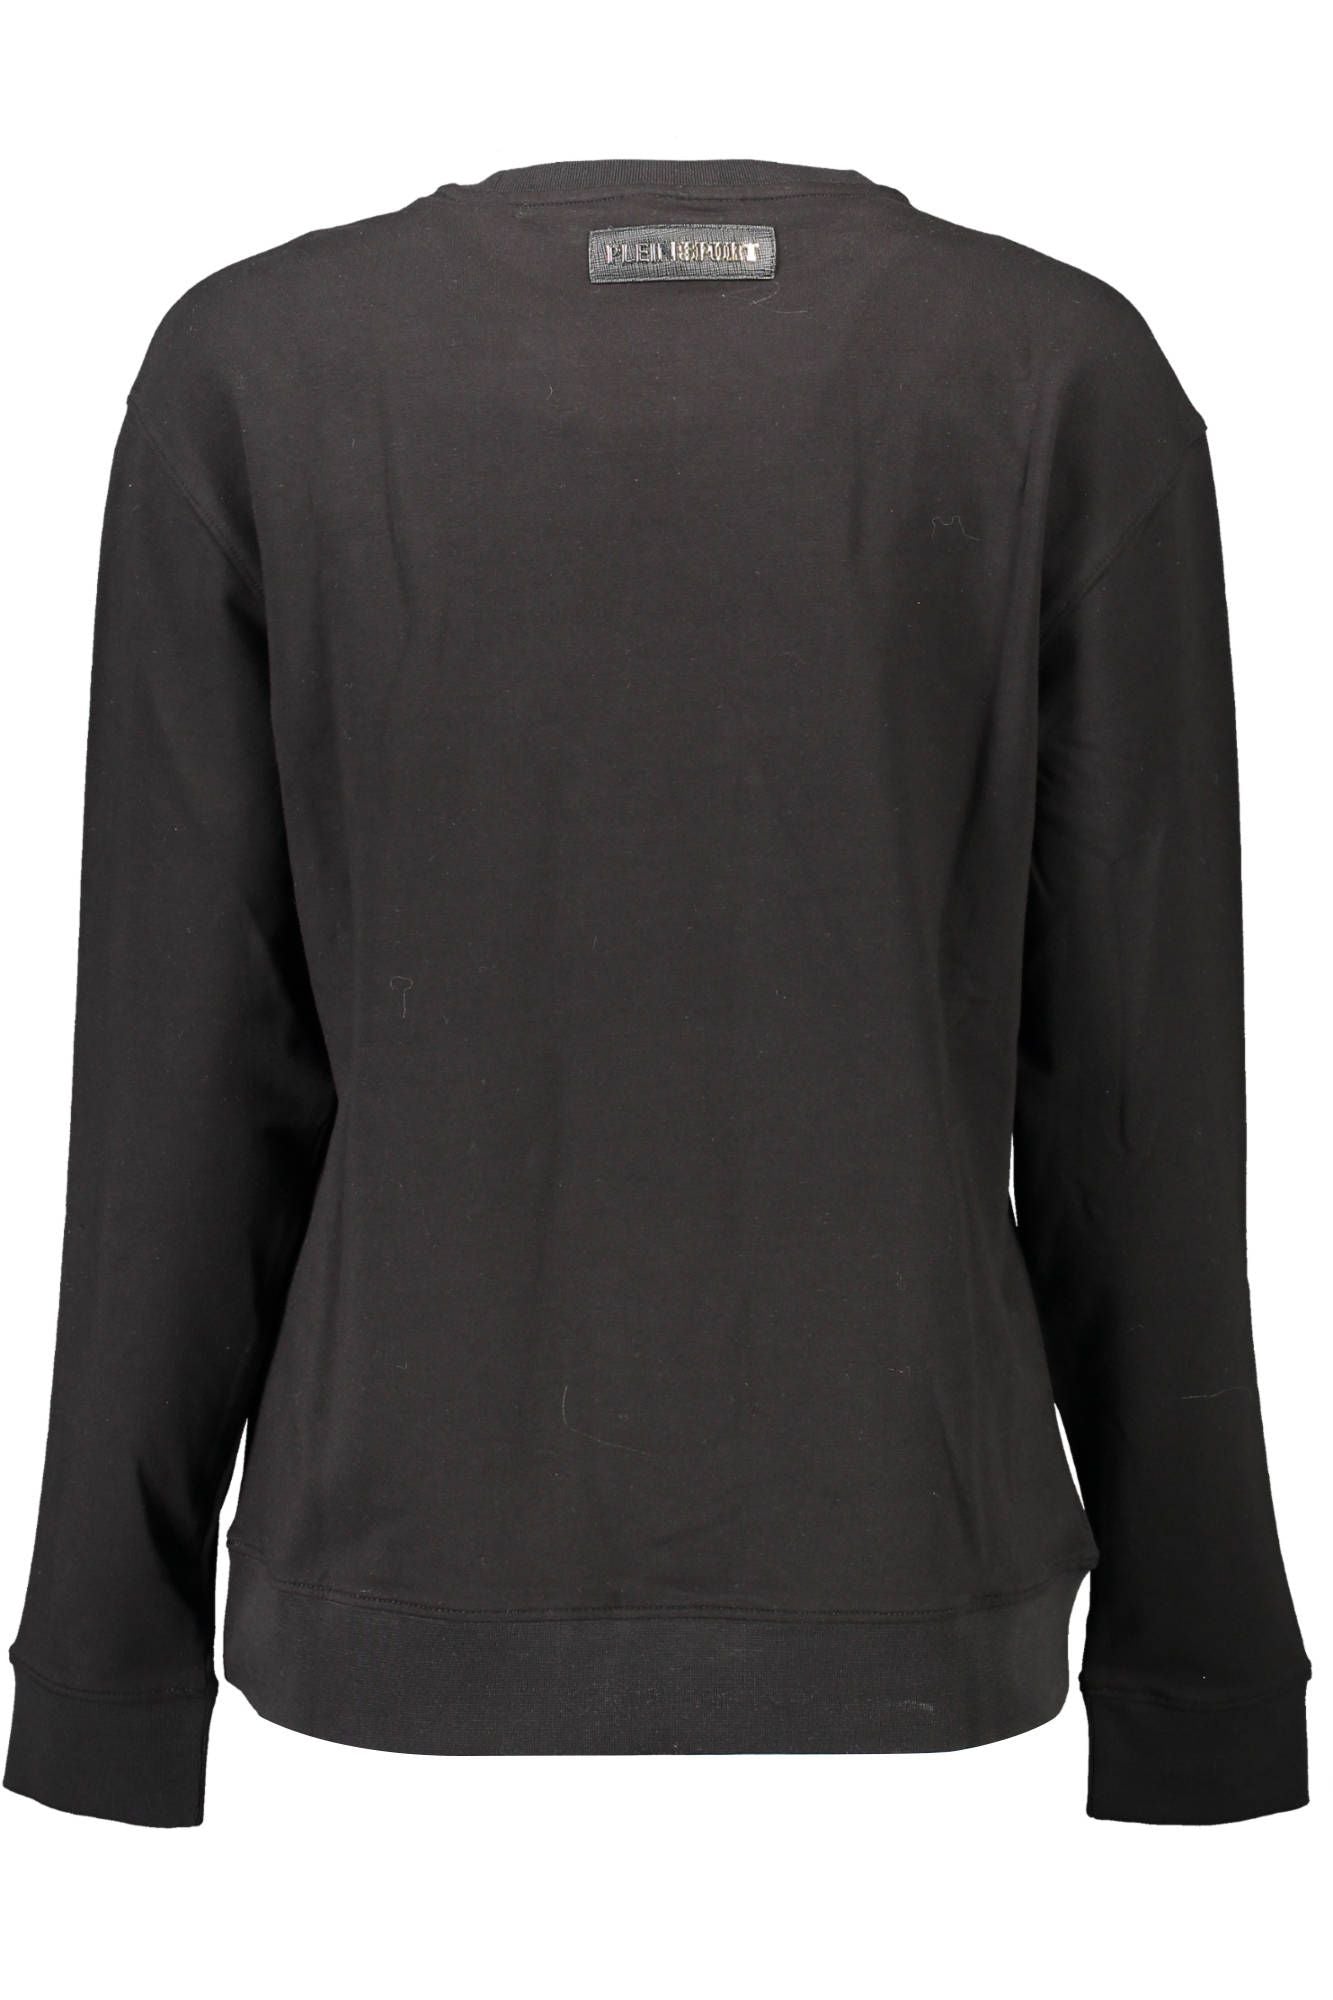 Plein Sport Black Cotton Sweater